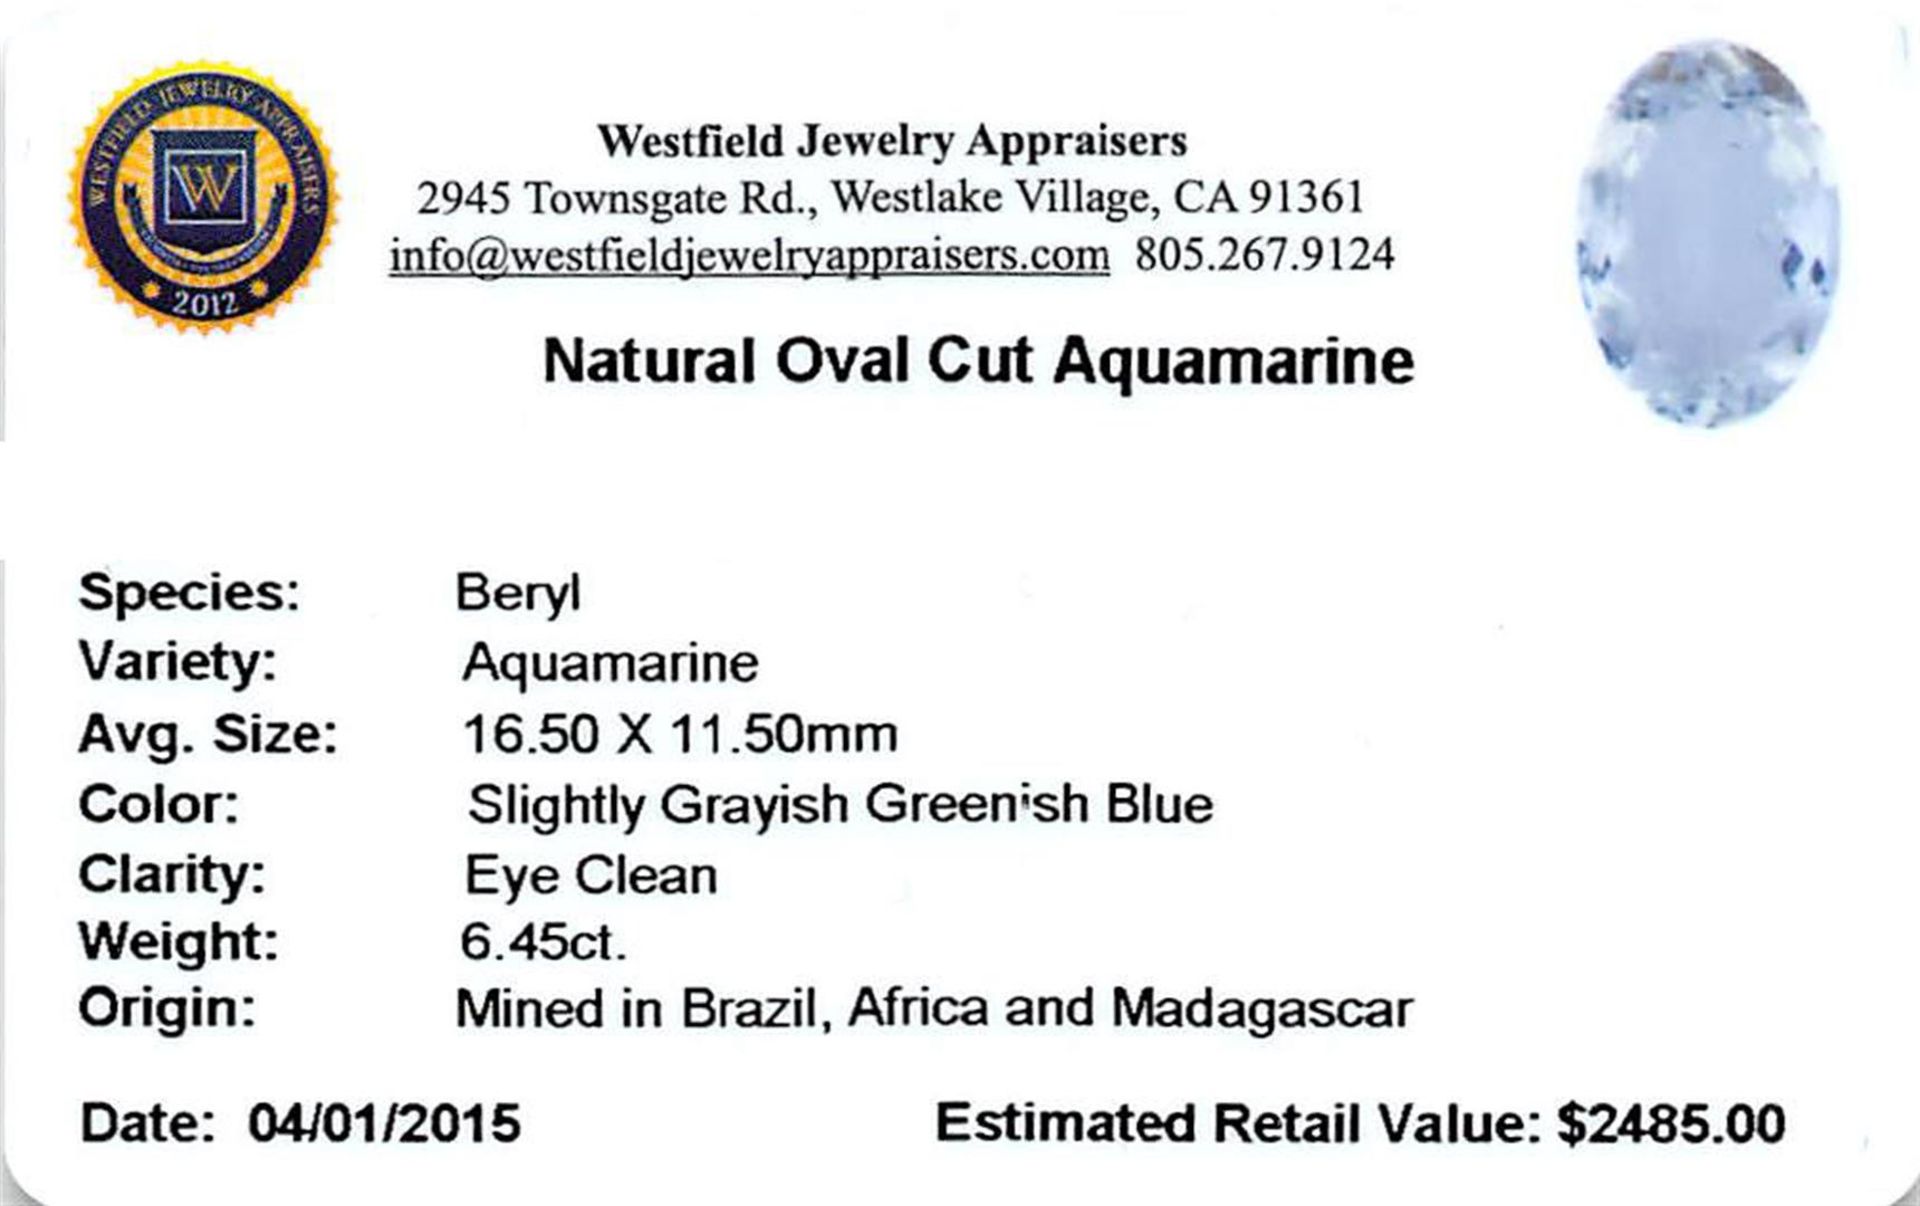 6.45 ctw Oval Aquamarine Parcel - Image 2 of 2